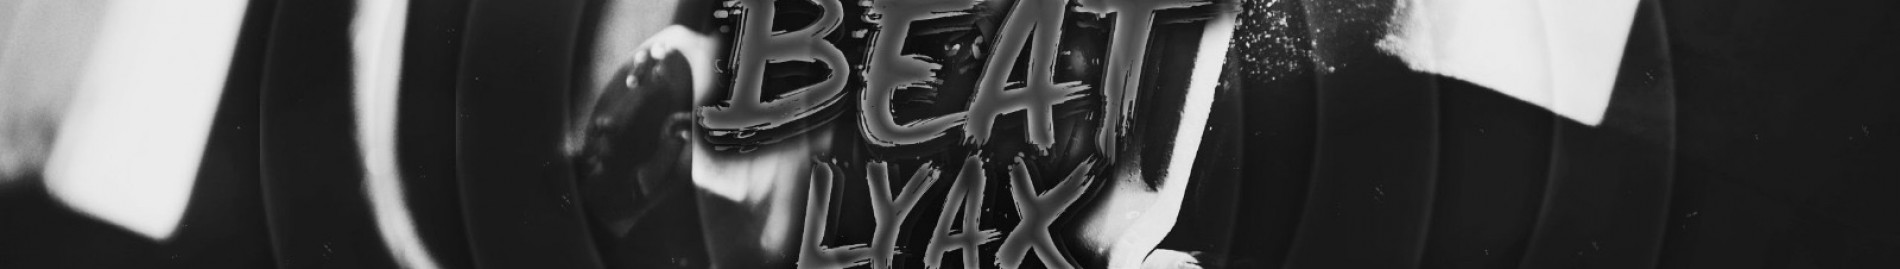 beatlyax